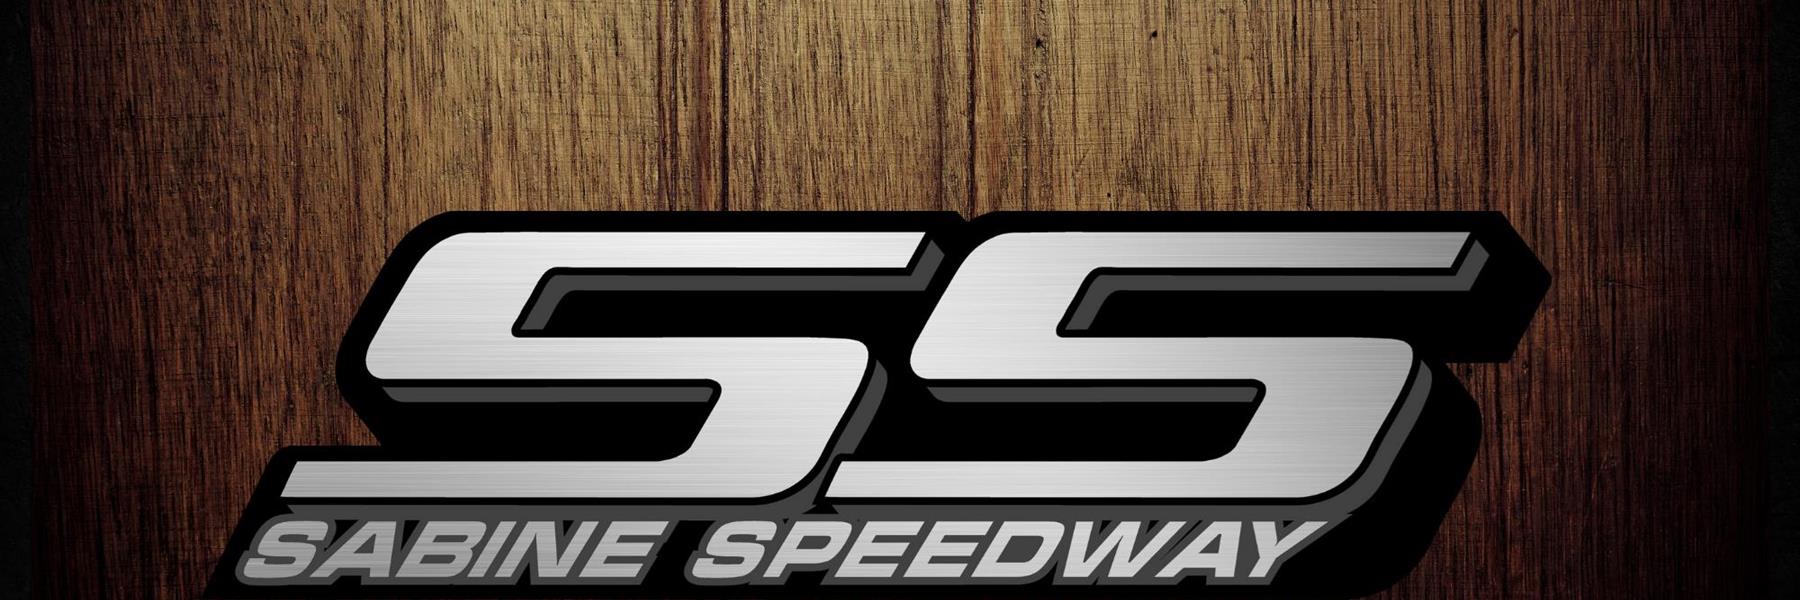 8/26/2022 - Sabine Speedway